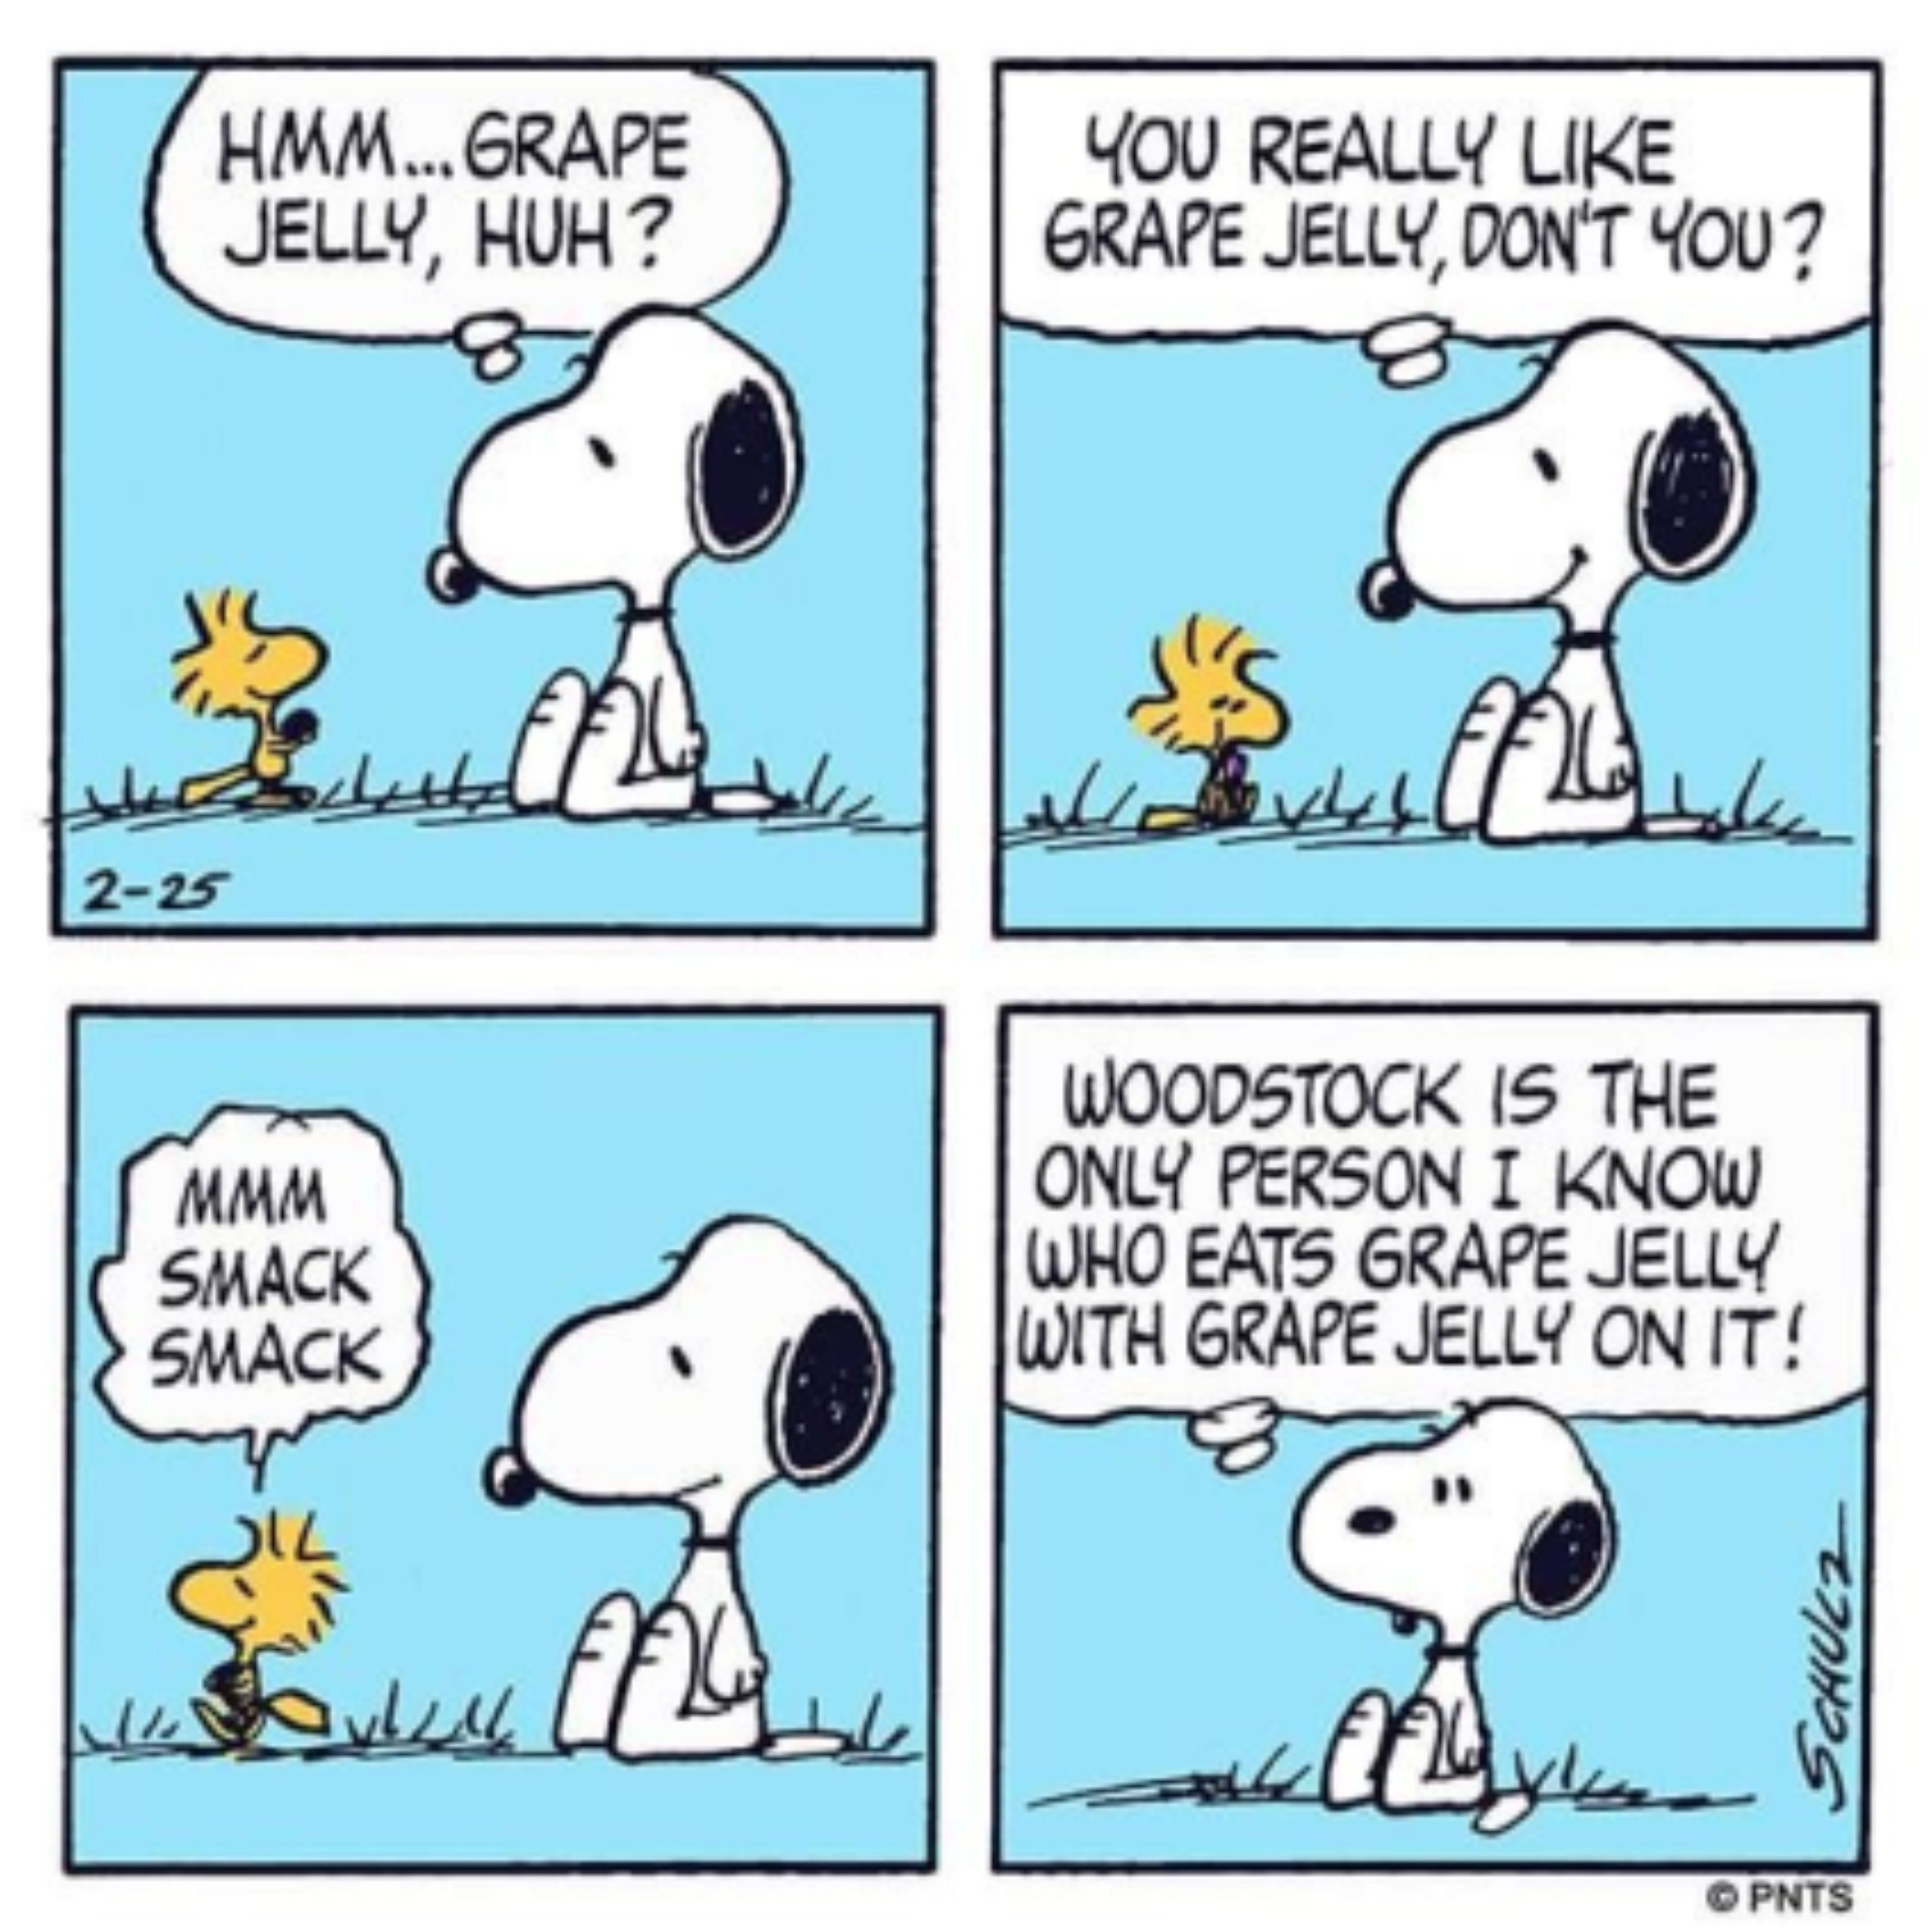 Snoopy e Woodstock discutindo geleia de uva em Peanuts.